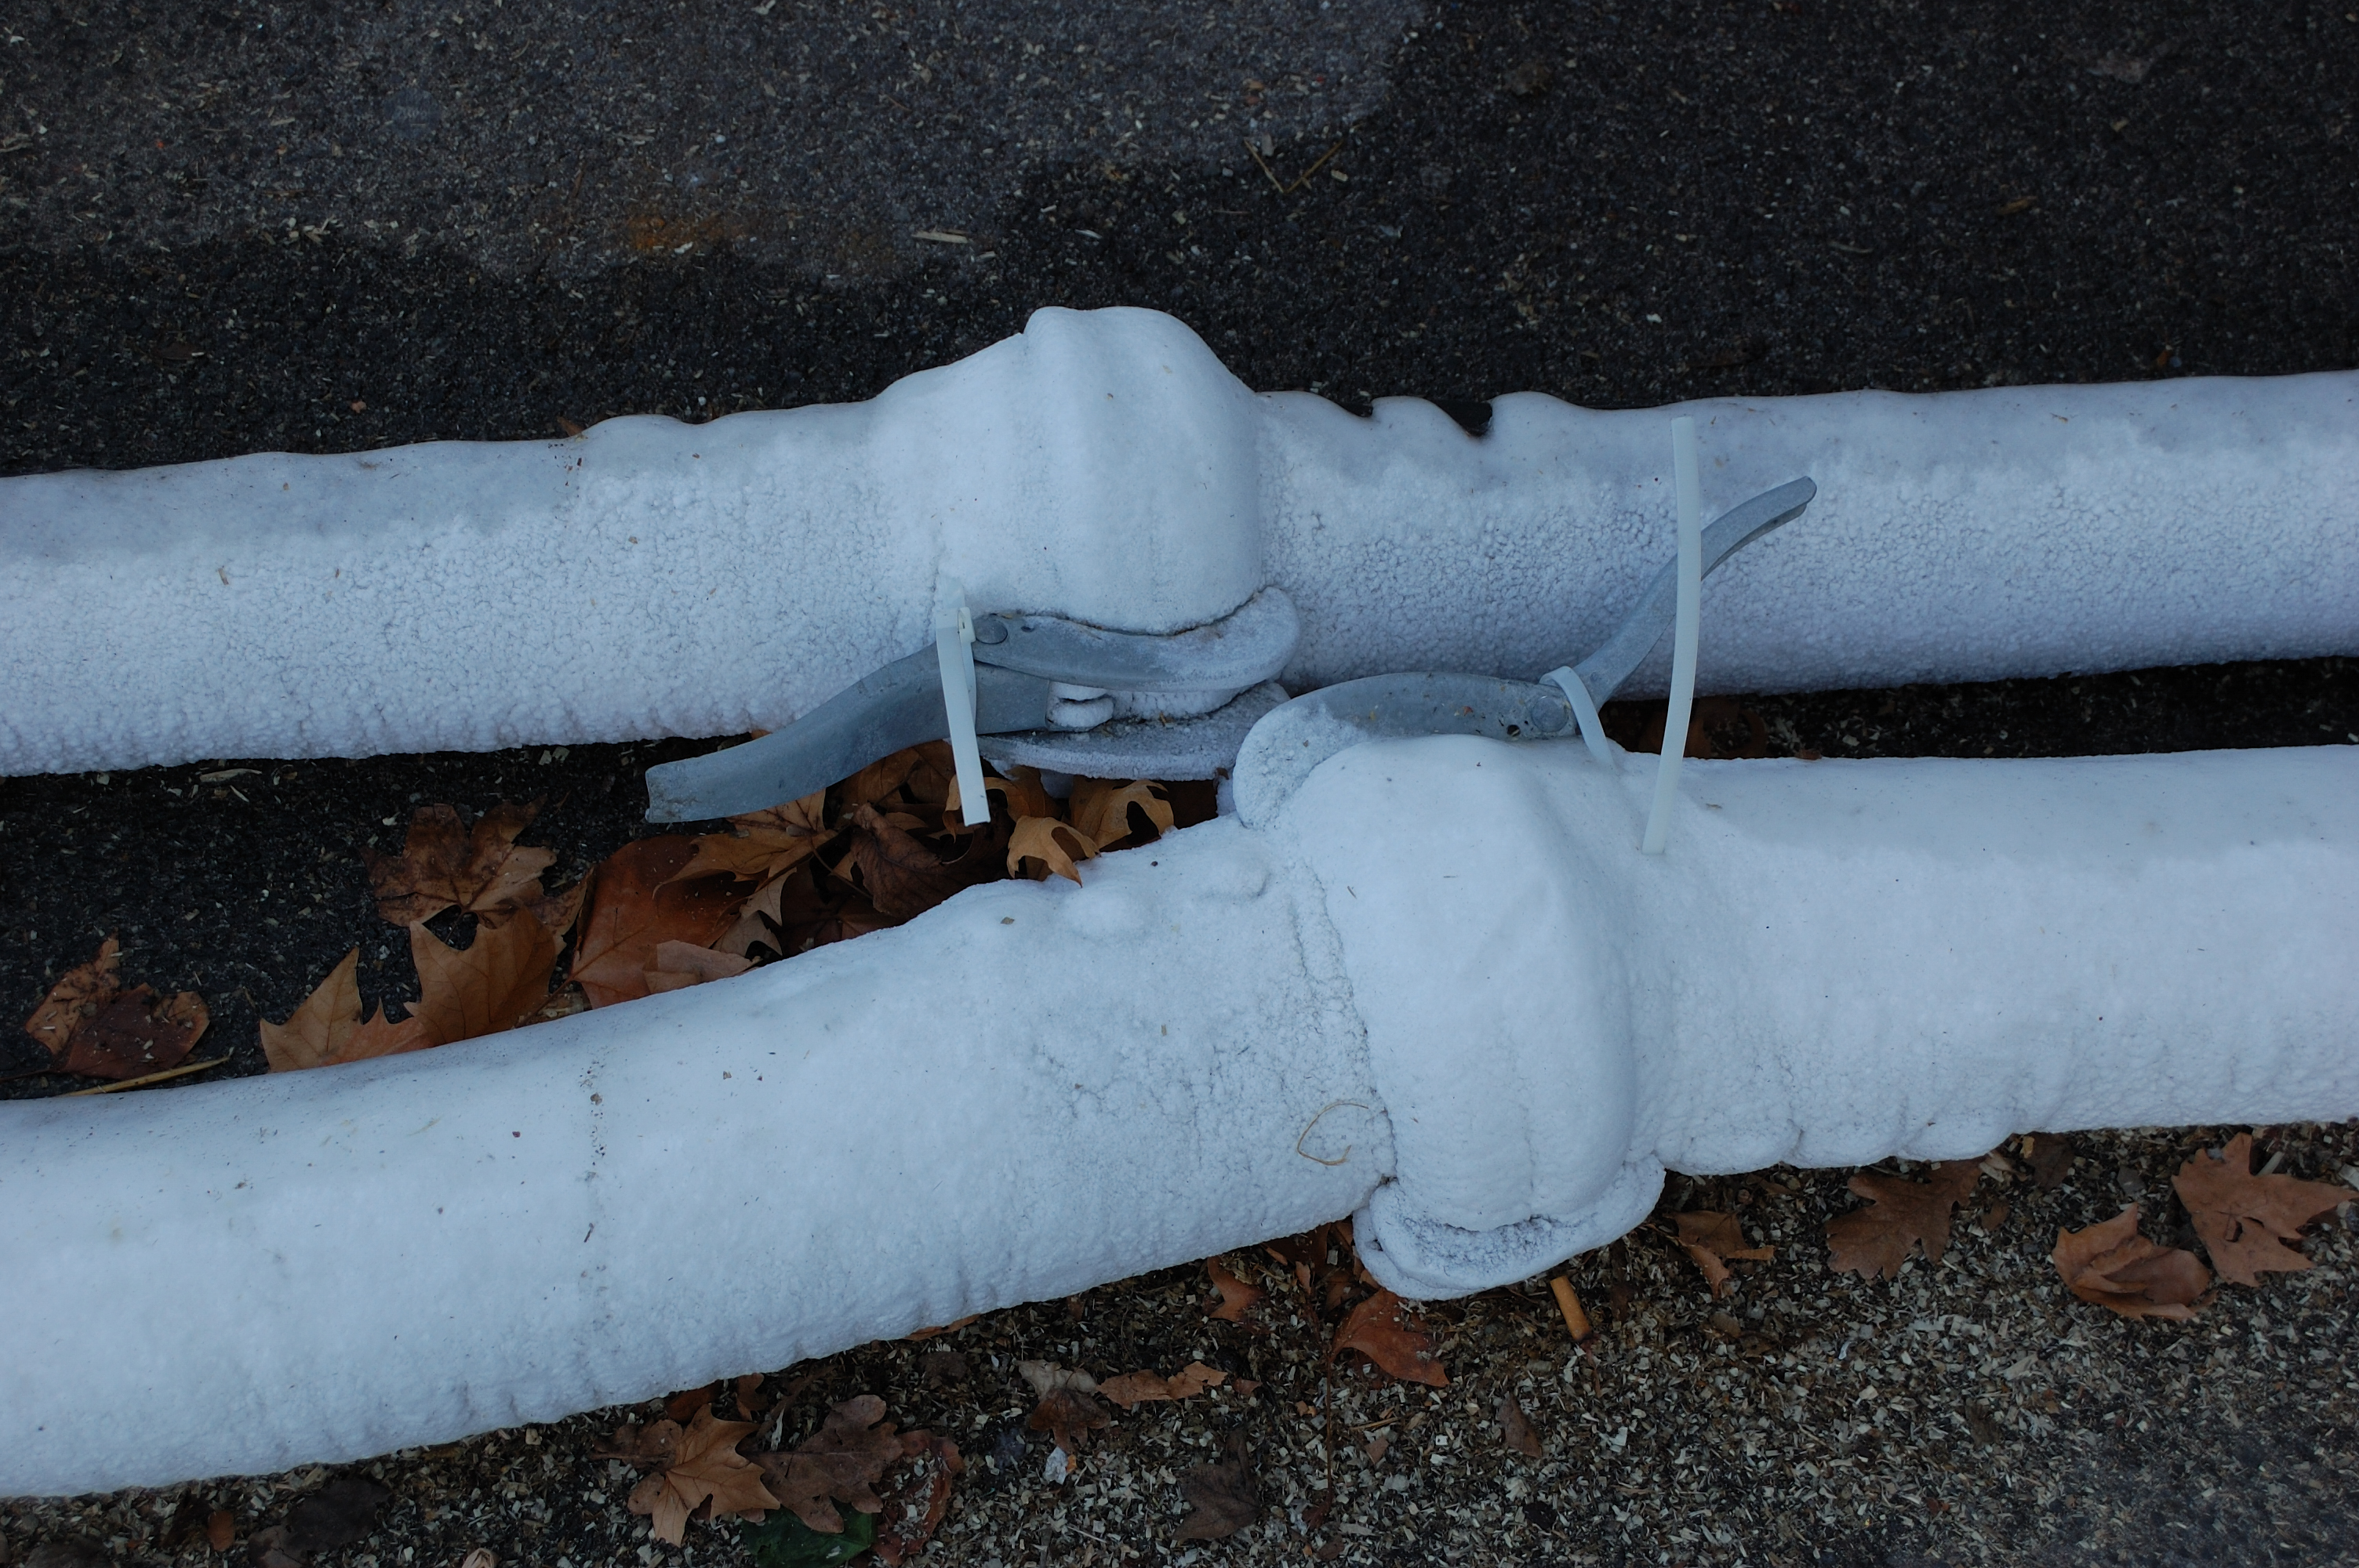 File:Wien Frozen Pipes (2311358162).jpg - Wikimedia Commons